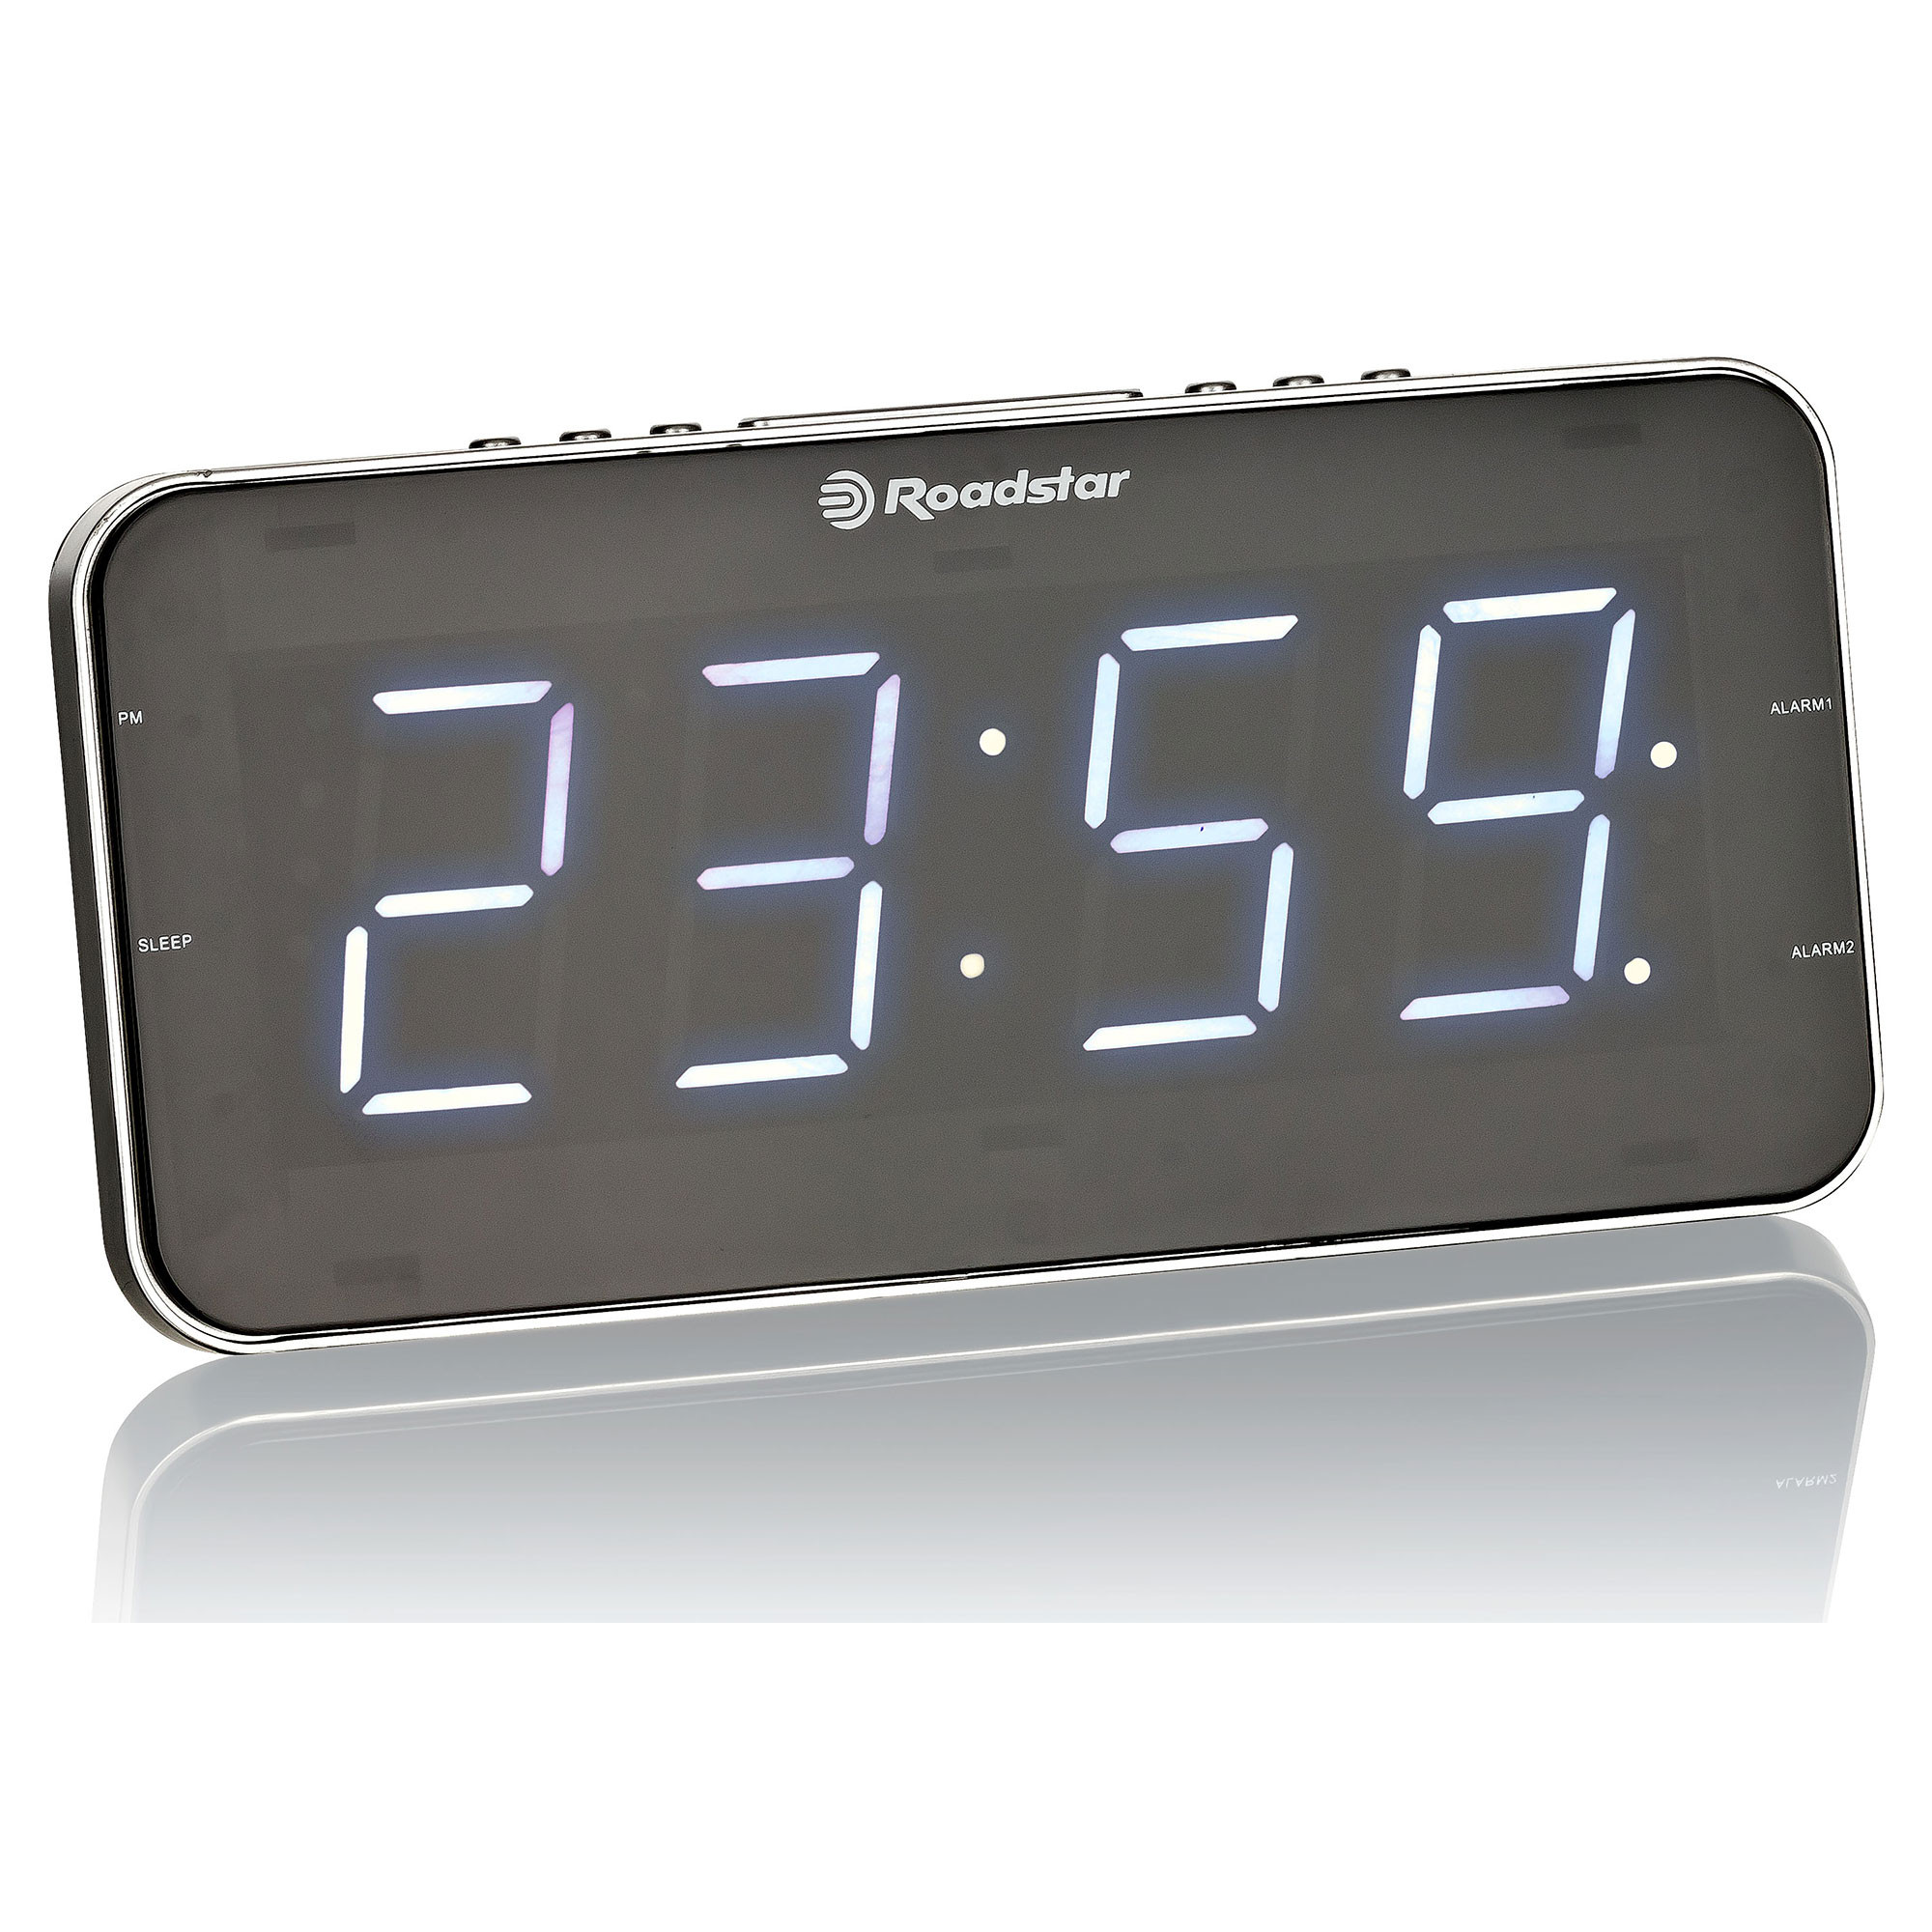 Radio Reloj con Alarma Dual, Reloj Despertador Digital con 2